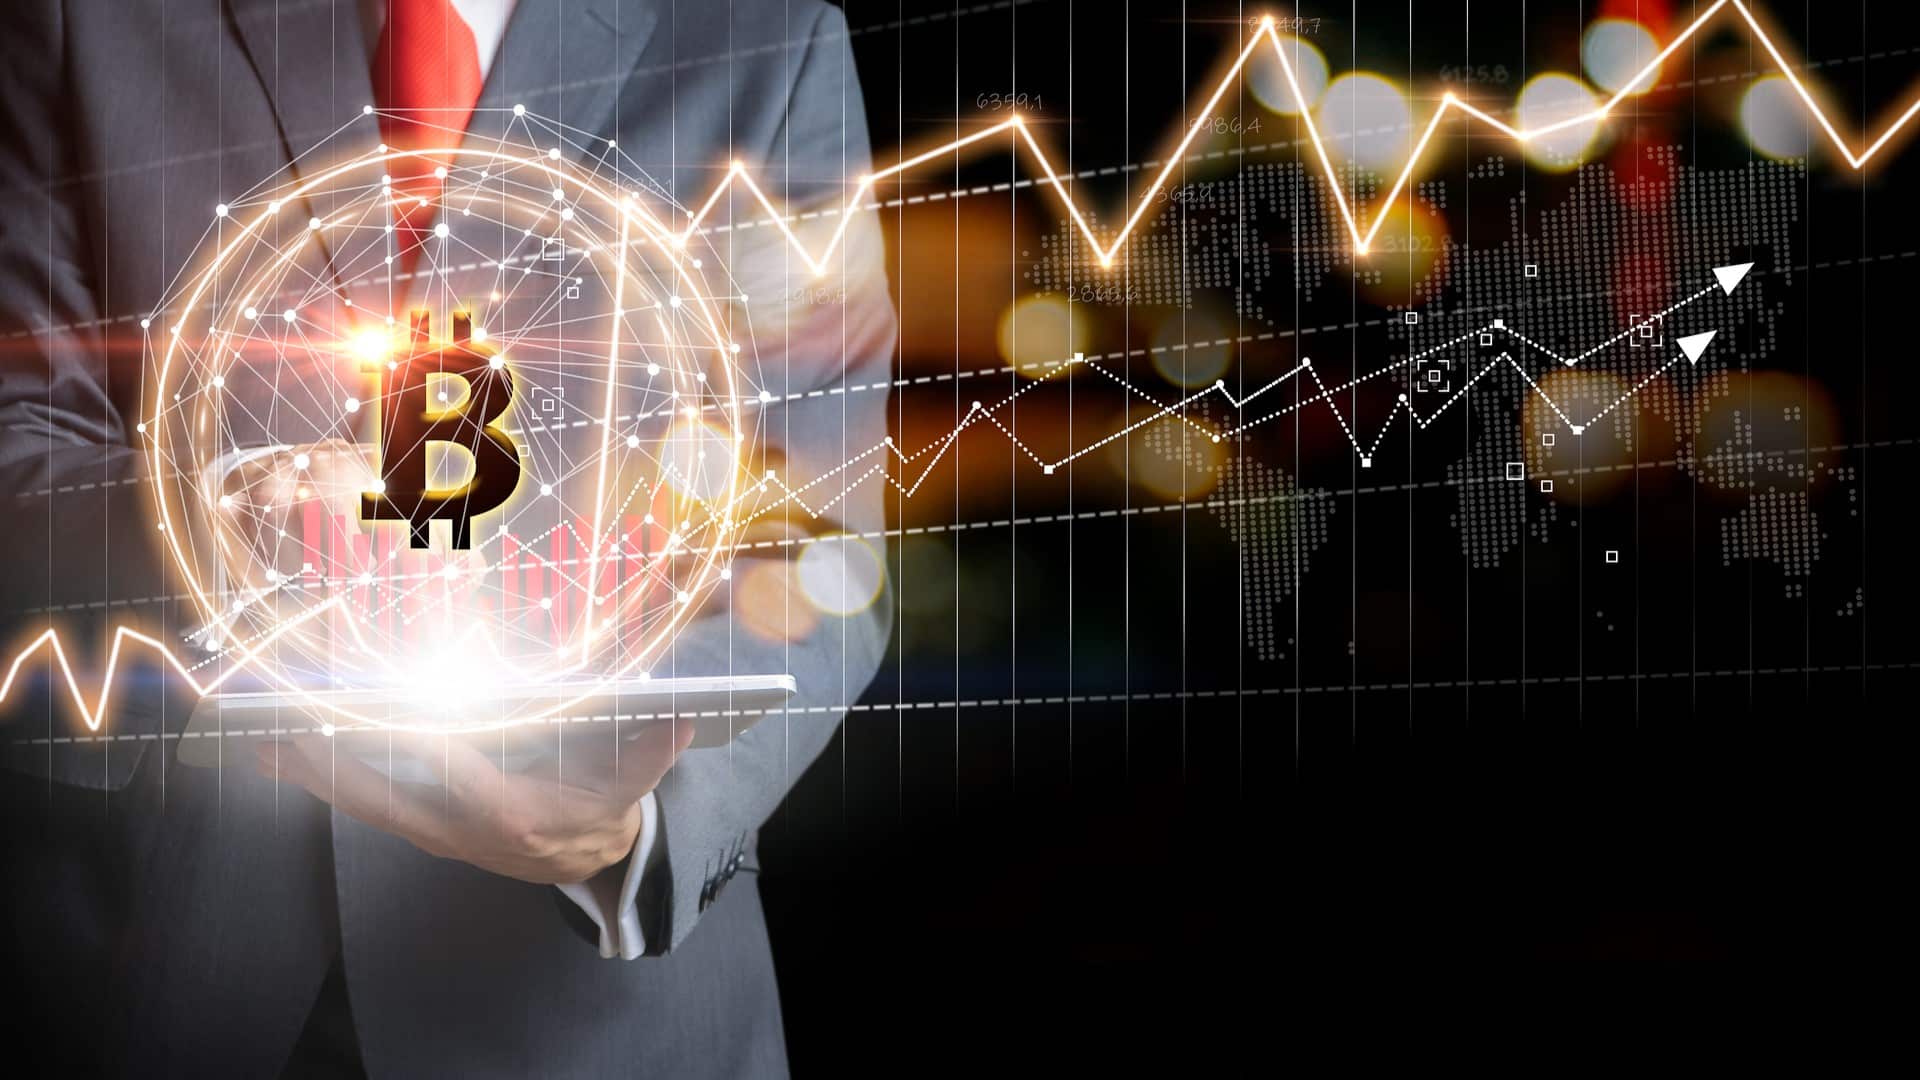 “Queda do Bitcoin para 20 mil dólares não apaga passado glorioso”, diz bilionário